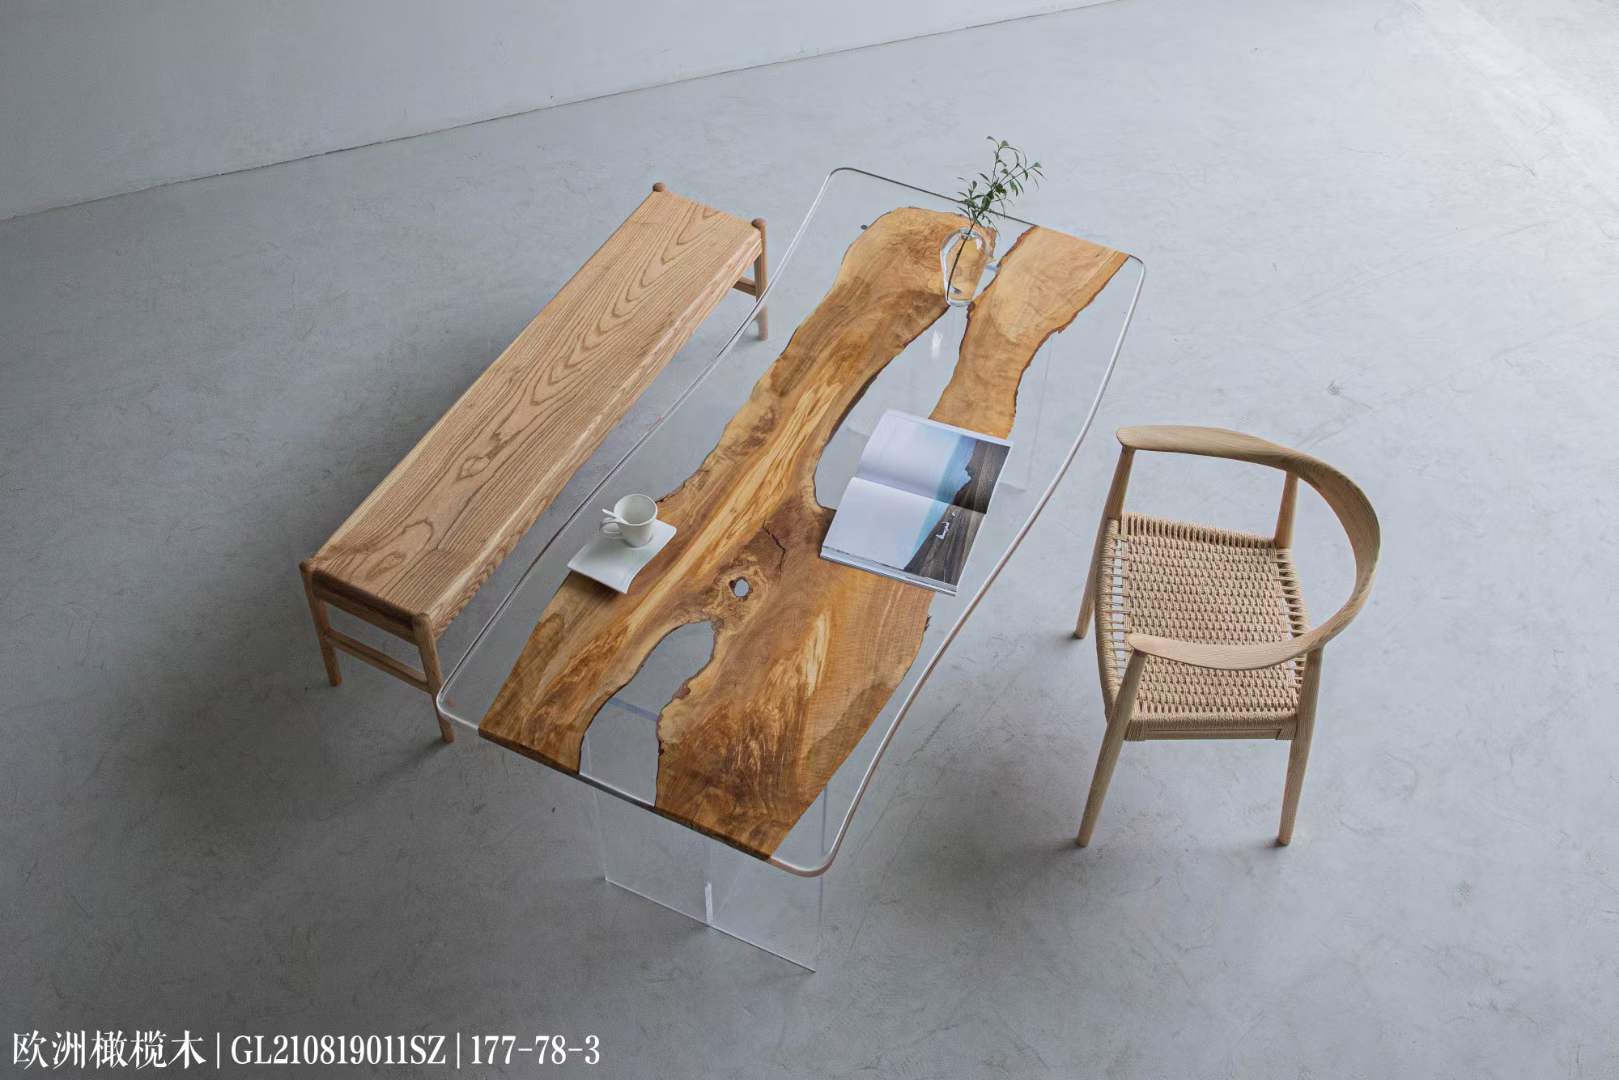 裕沁庭茶空间全品类家具优选空间定制家具